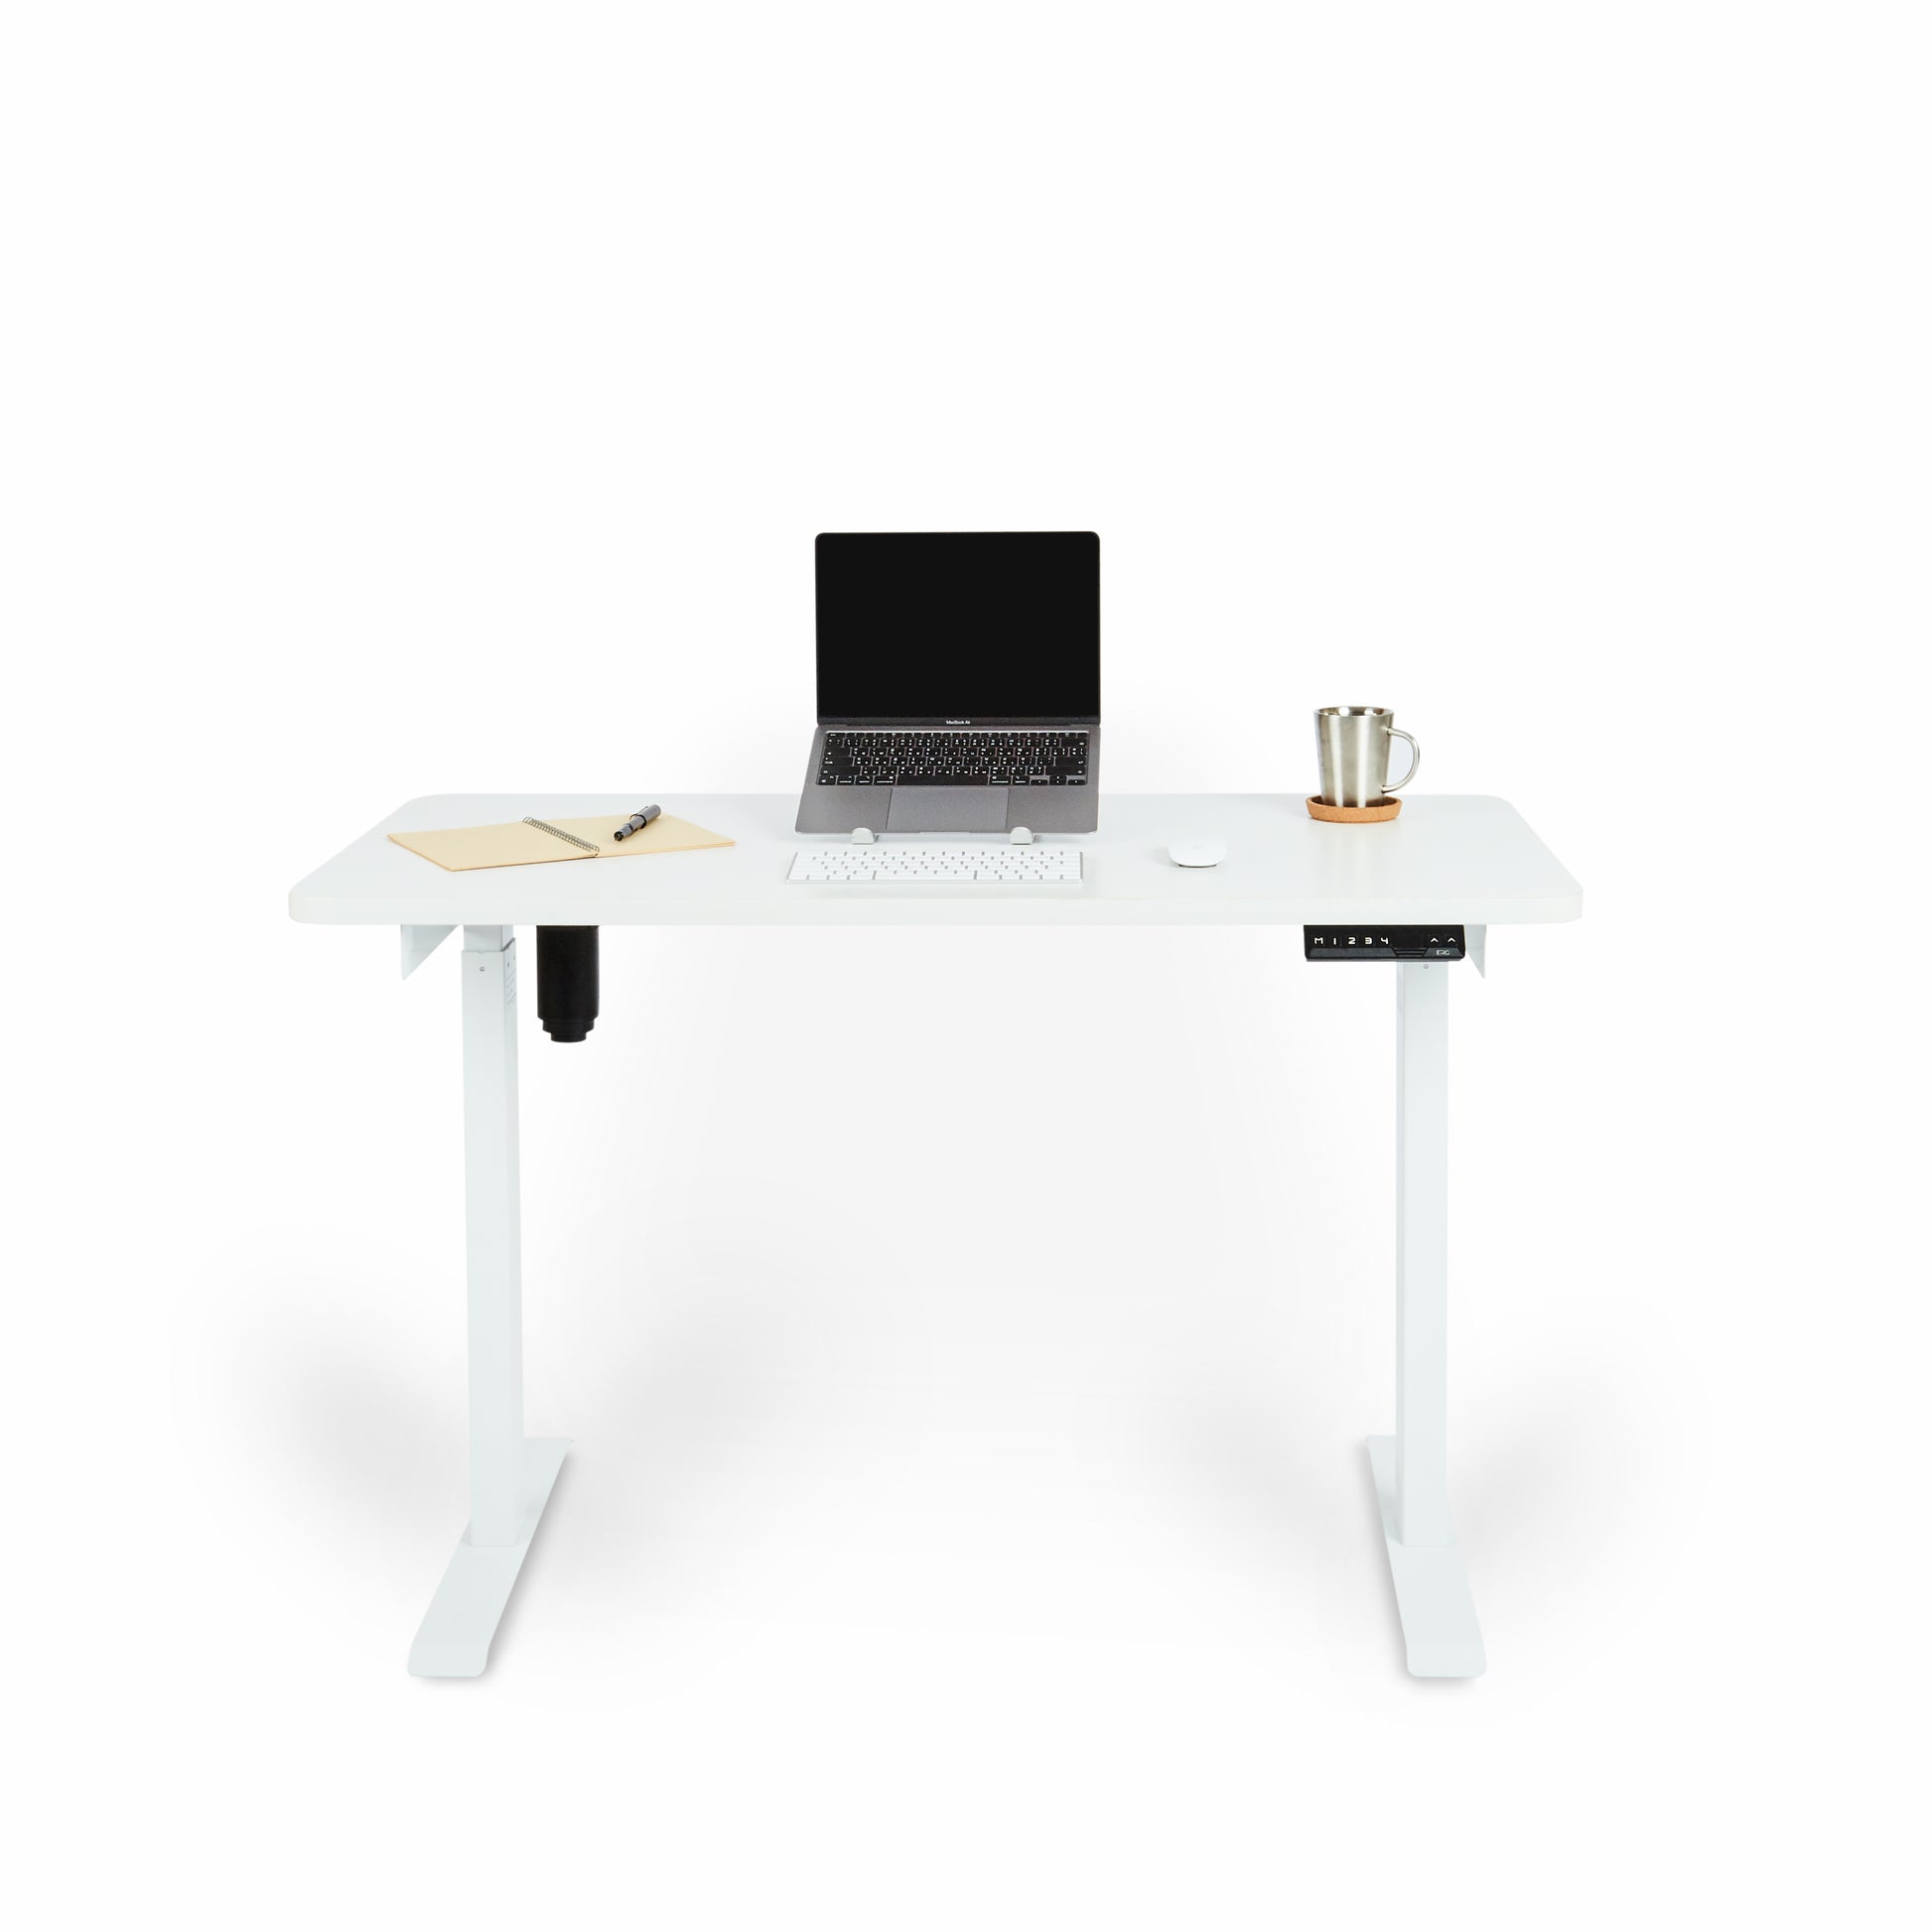 โต๊ะทำงานปรับระดับไฟฟ้า DreamDesk